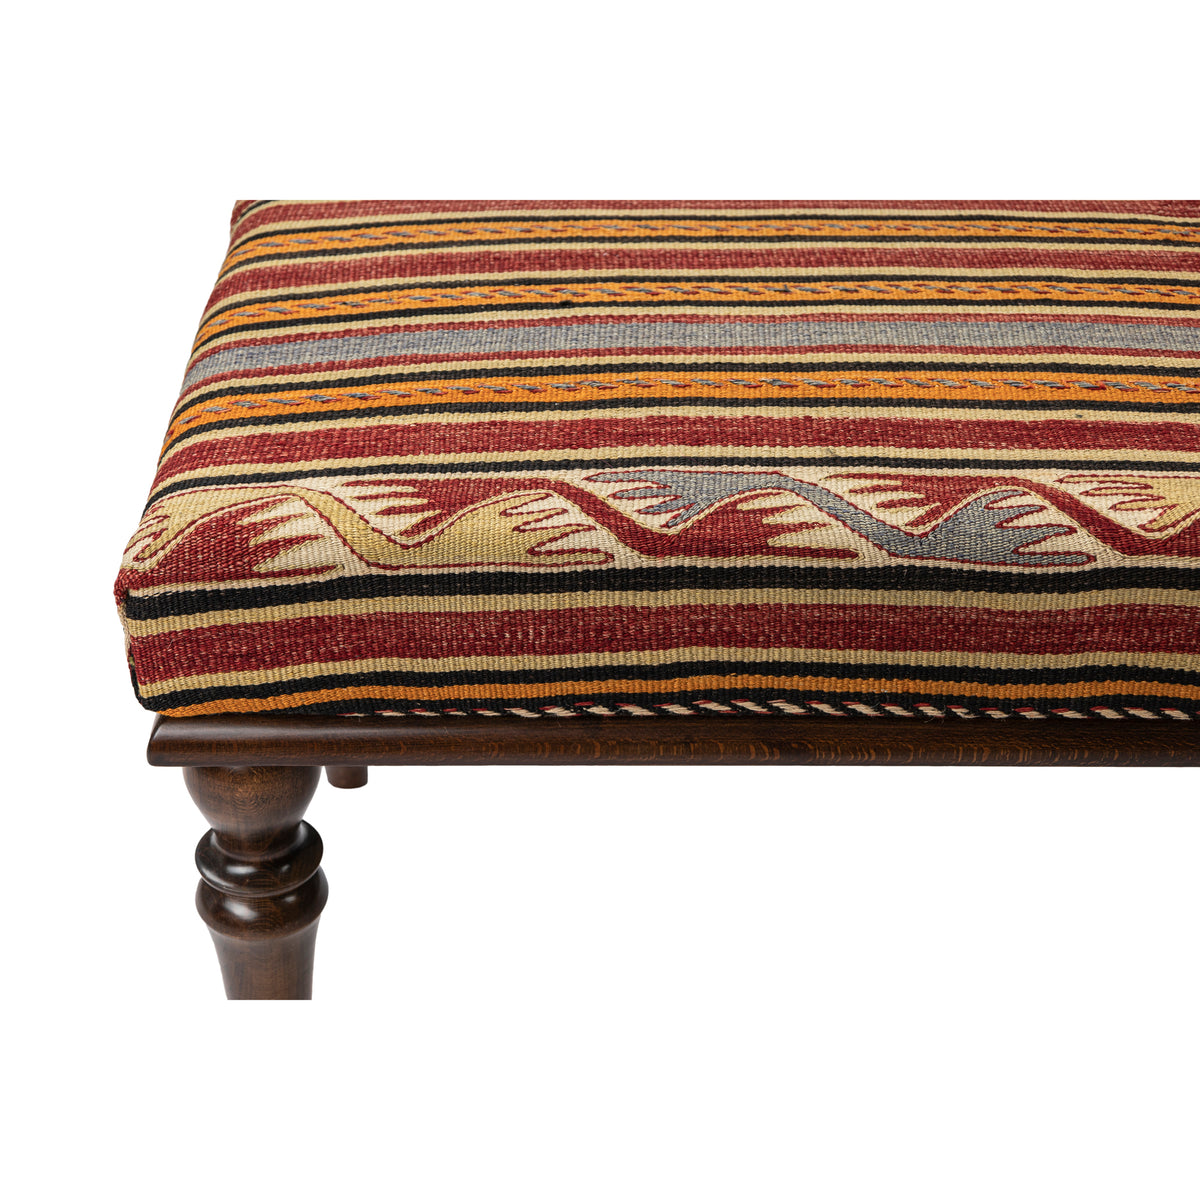 Upholstered Vintage Kilim Wooden Bench - Ottoman